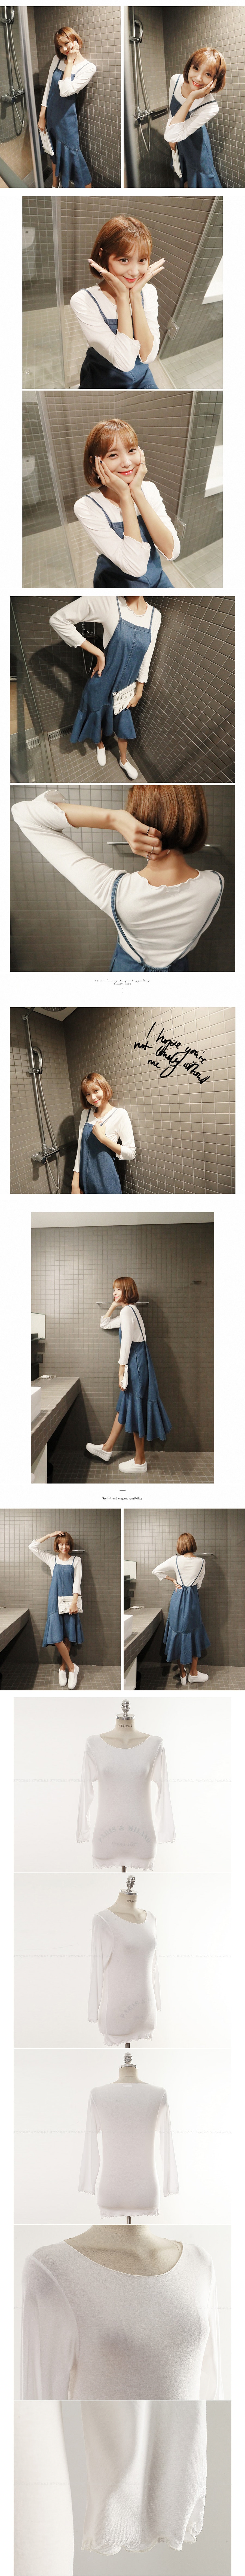 [Autumn New Set] Tie-Shoulder Denim Dress and White Soft T-Shirt 2 Pieces Set One Size(S-M)